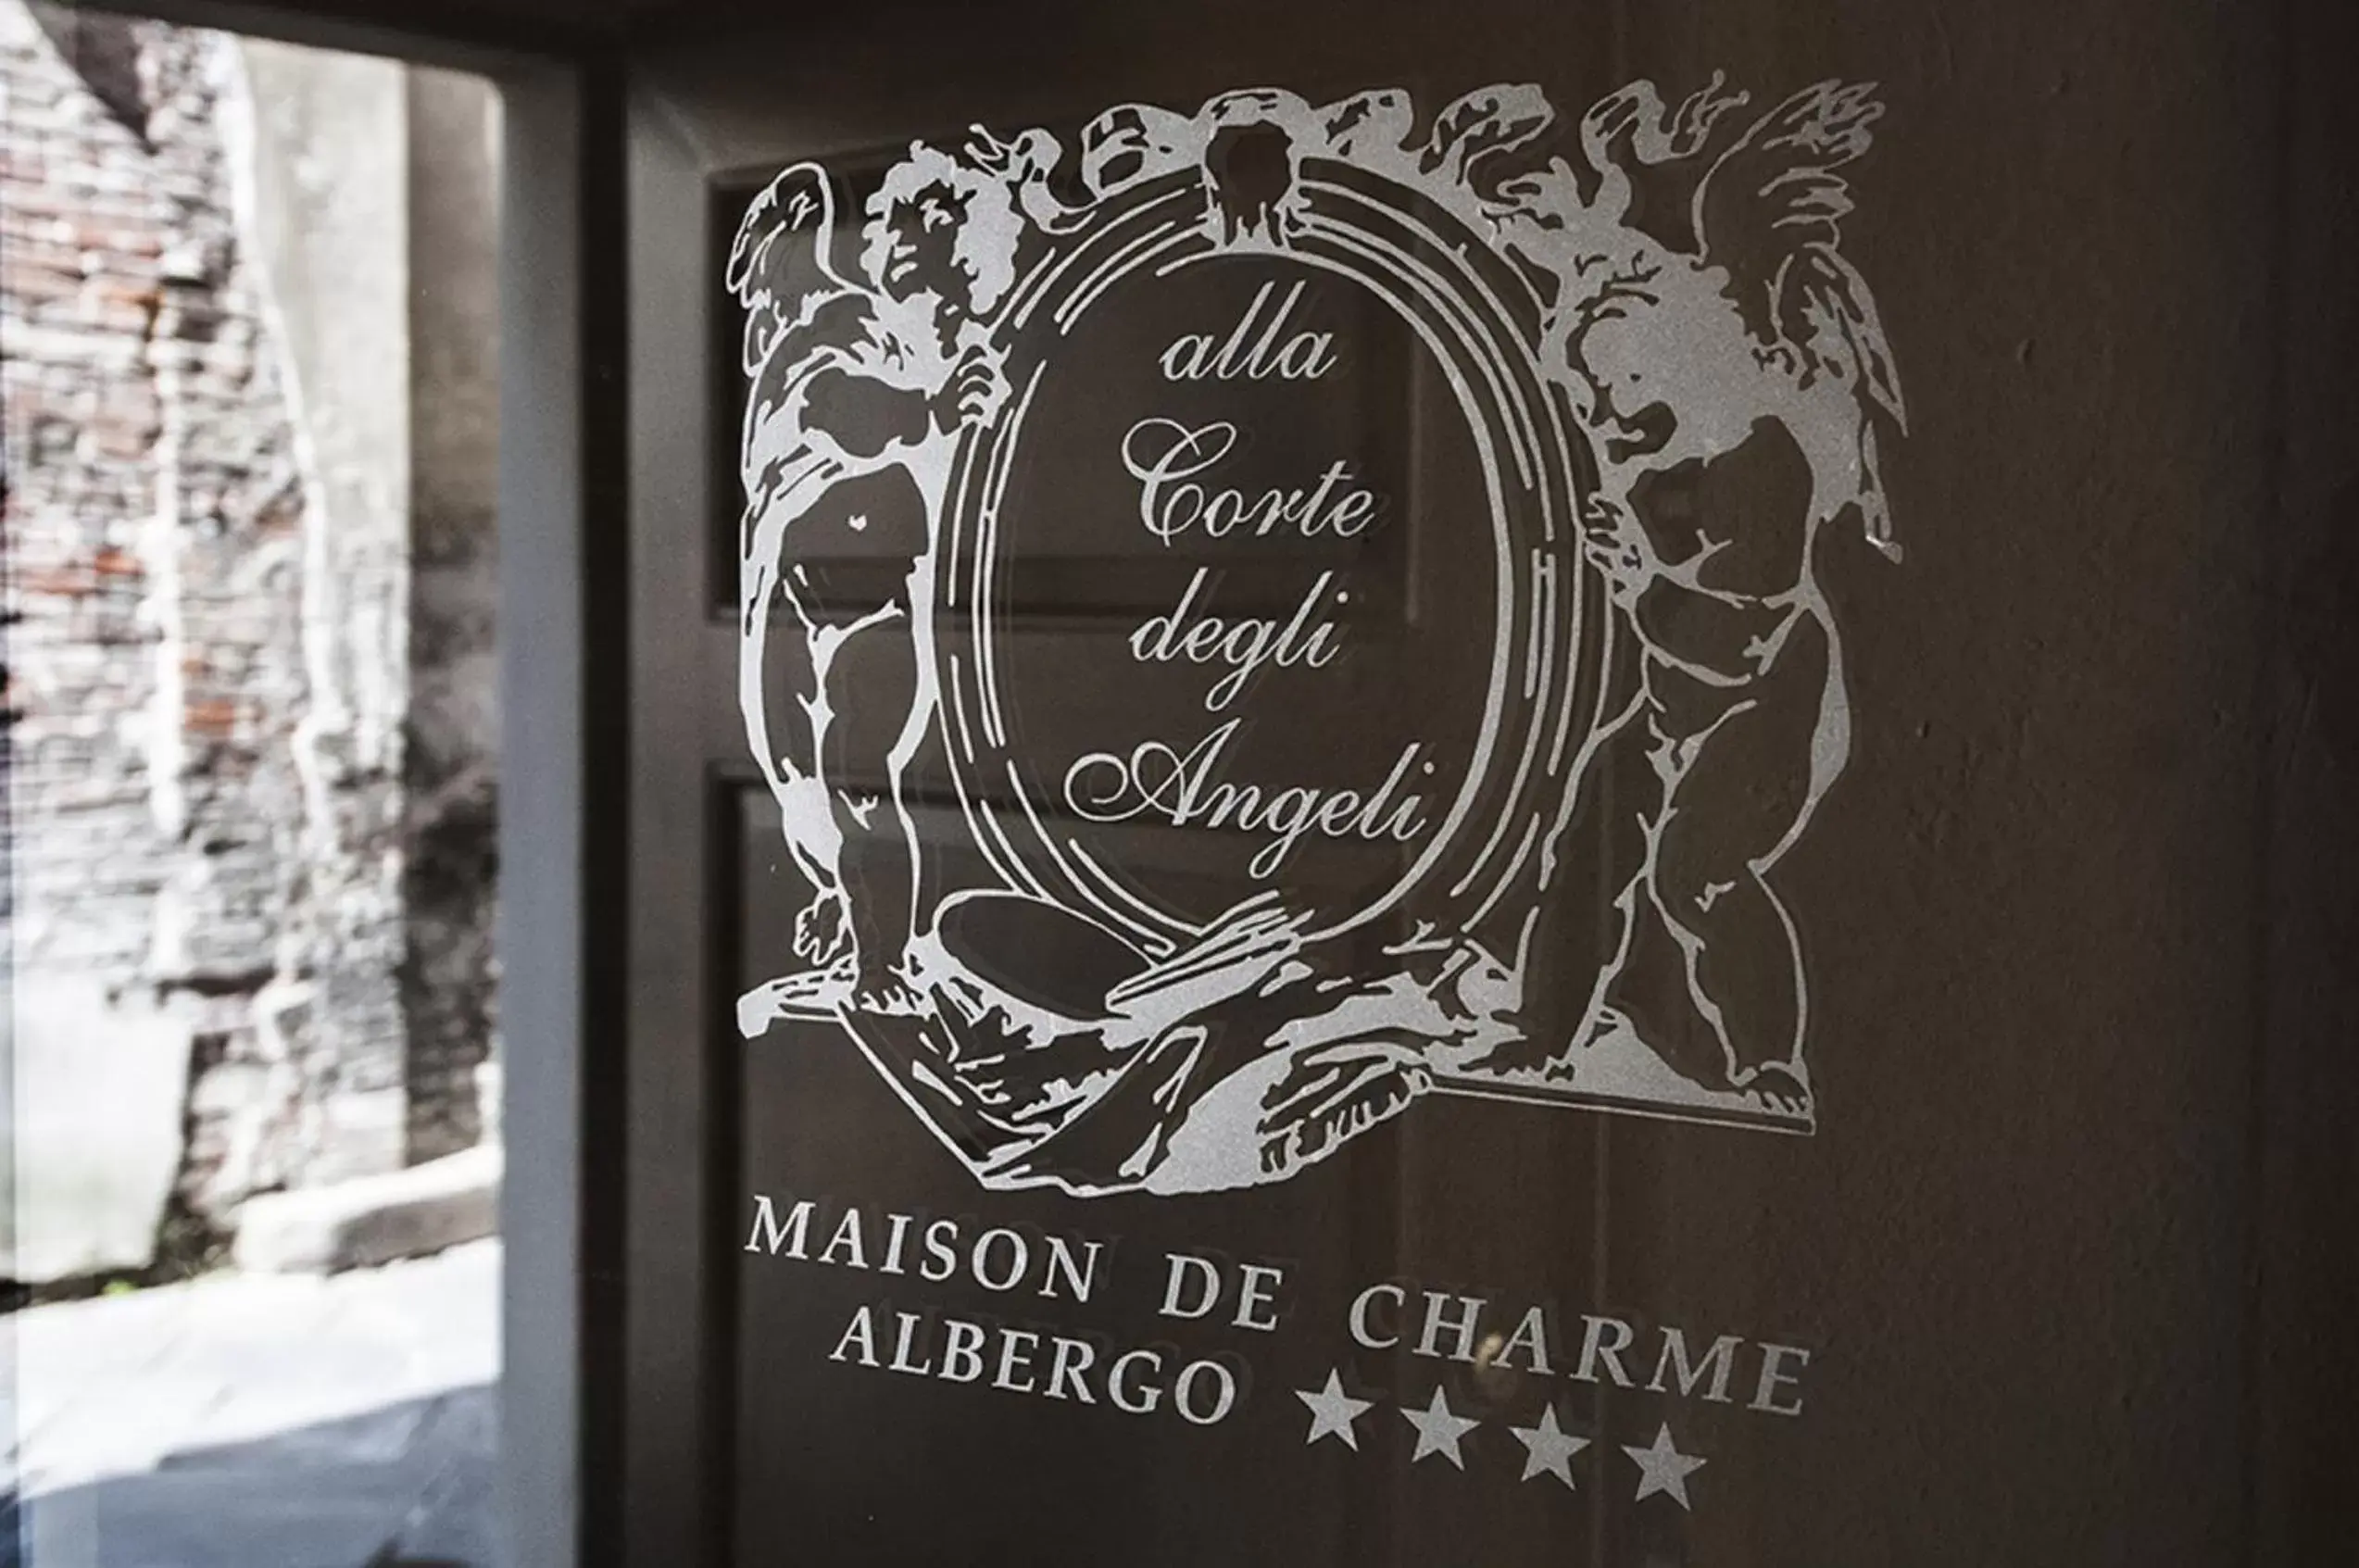 Decorative detail, Facade/Entrance in Hotel Alla Corte degli Angeli